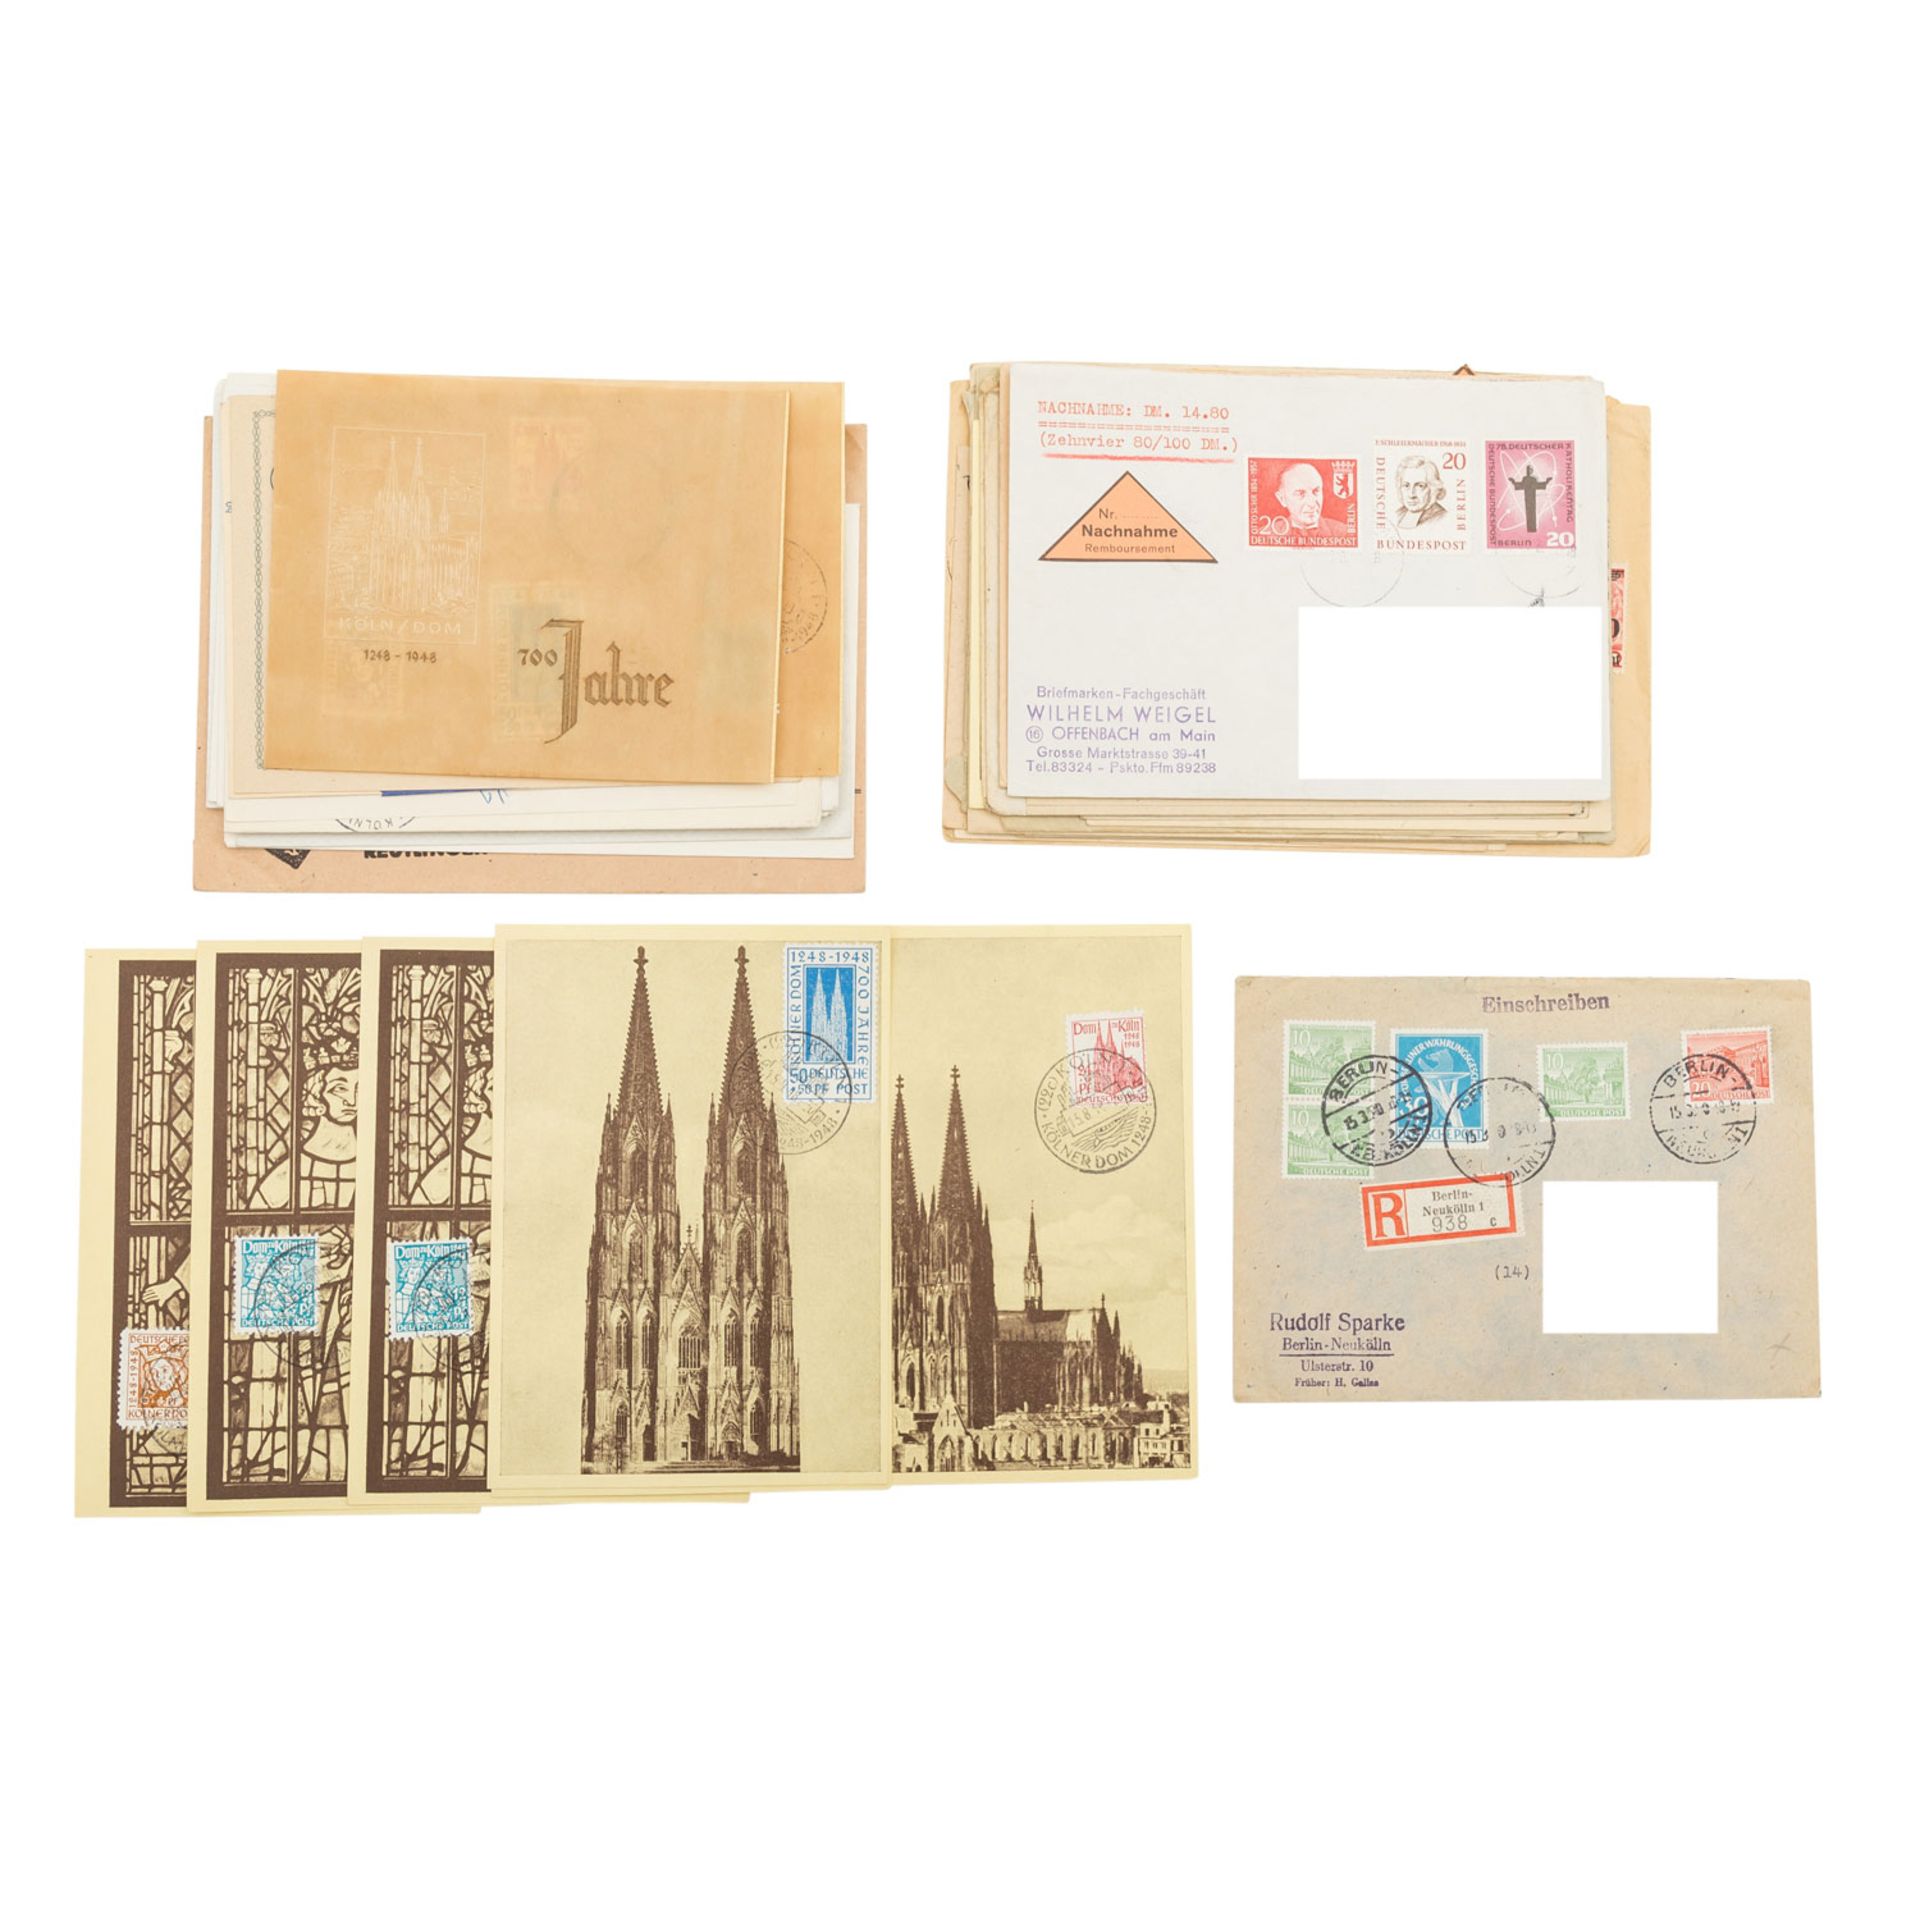 Deutschland Briefe und Karten - ca. 40 Stück,aus Dt. Reich bis 1950. Dabei Vermerk "zurück wegen